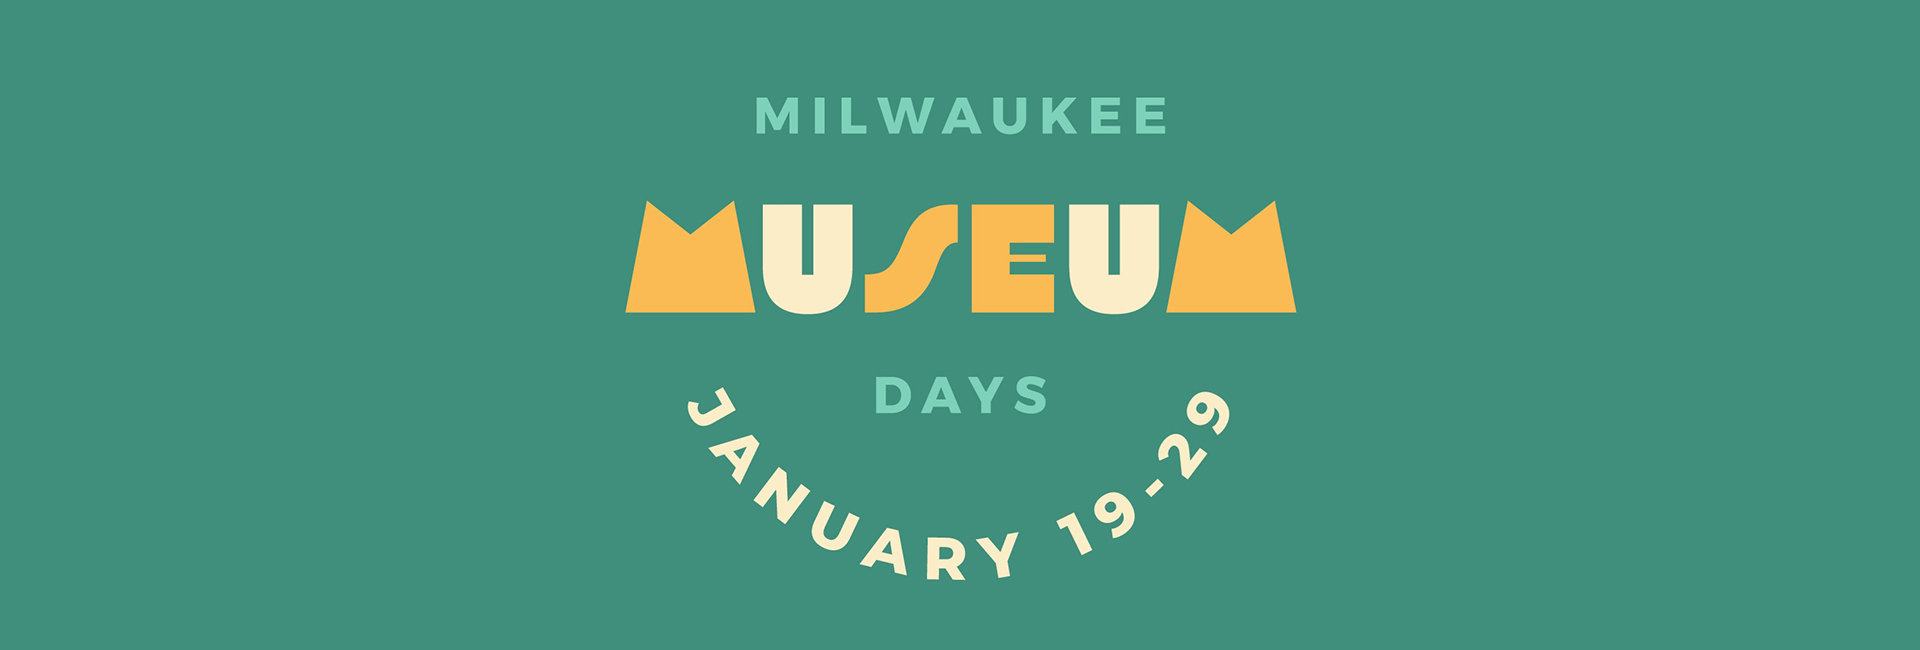 Milwaukee Museum Days